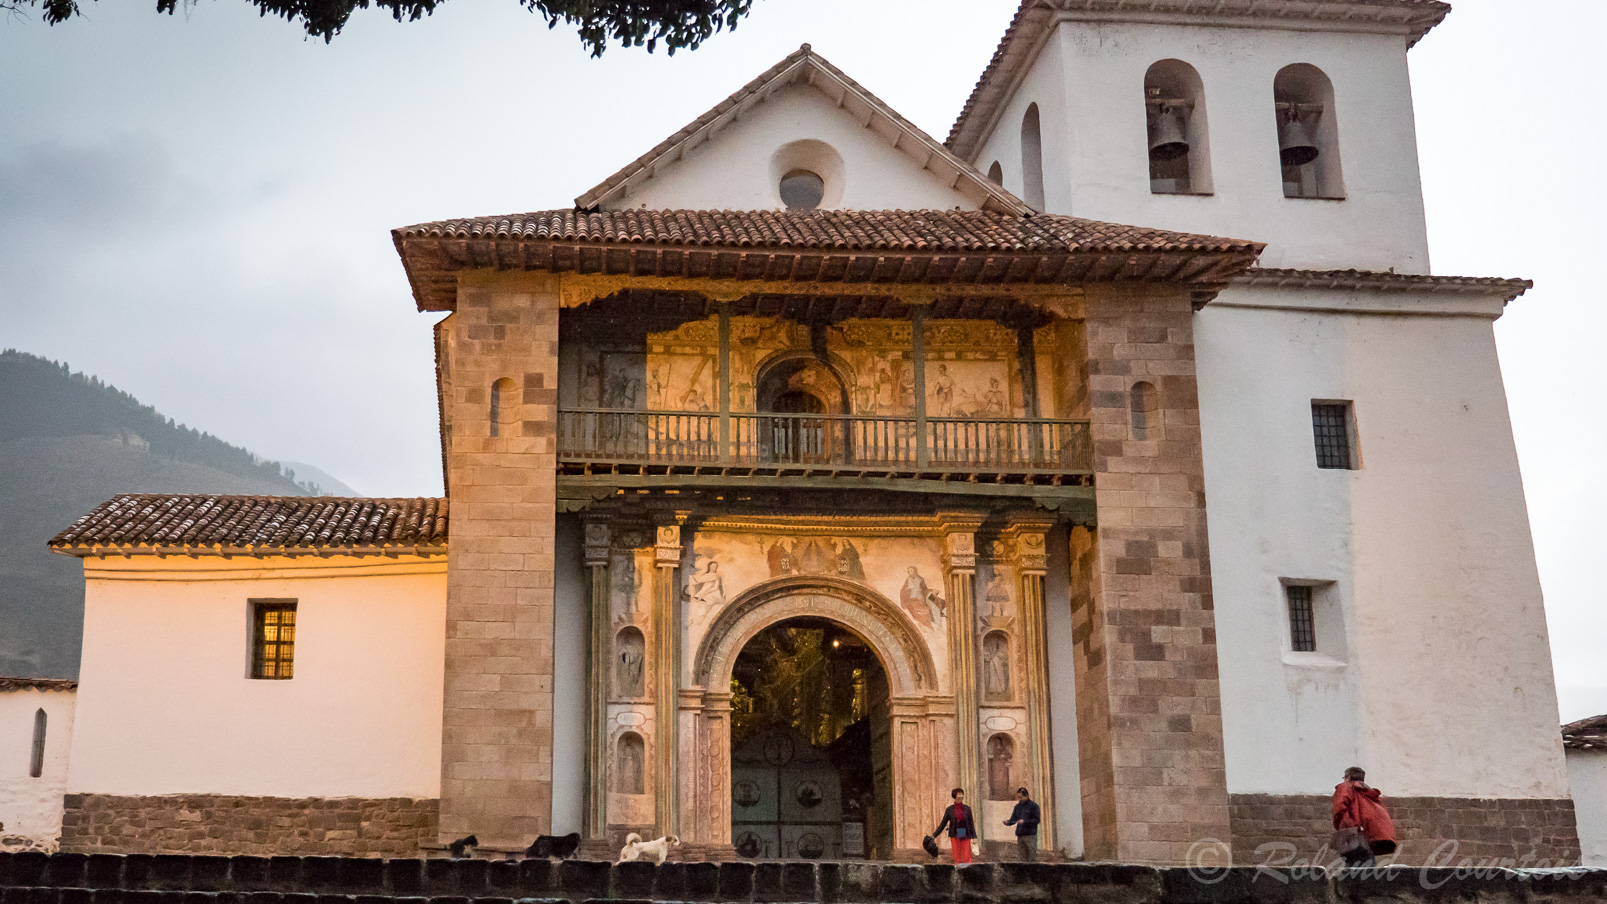 Halte au petit village d'Andahuaylillas pour voir sa ravissante église appelée la « chapelle Sixtine des Amériques » pour la richesse de sa décoration. L'extérieur appartient au style renaissance.